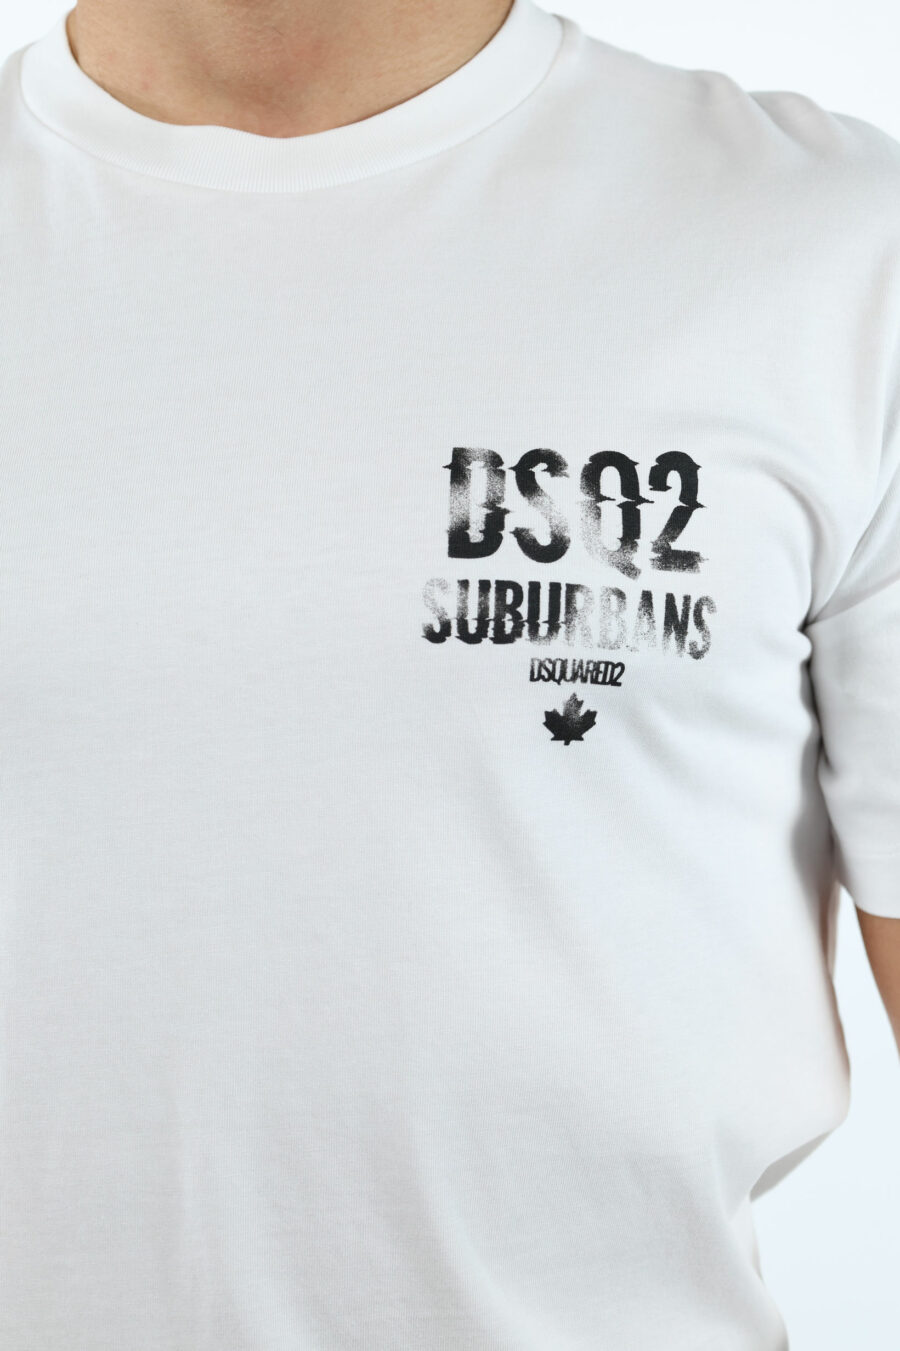 T-Shirt weiß mit Minilogo "suburbans" schwarz - 106624